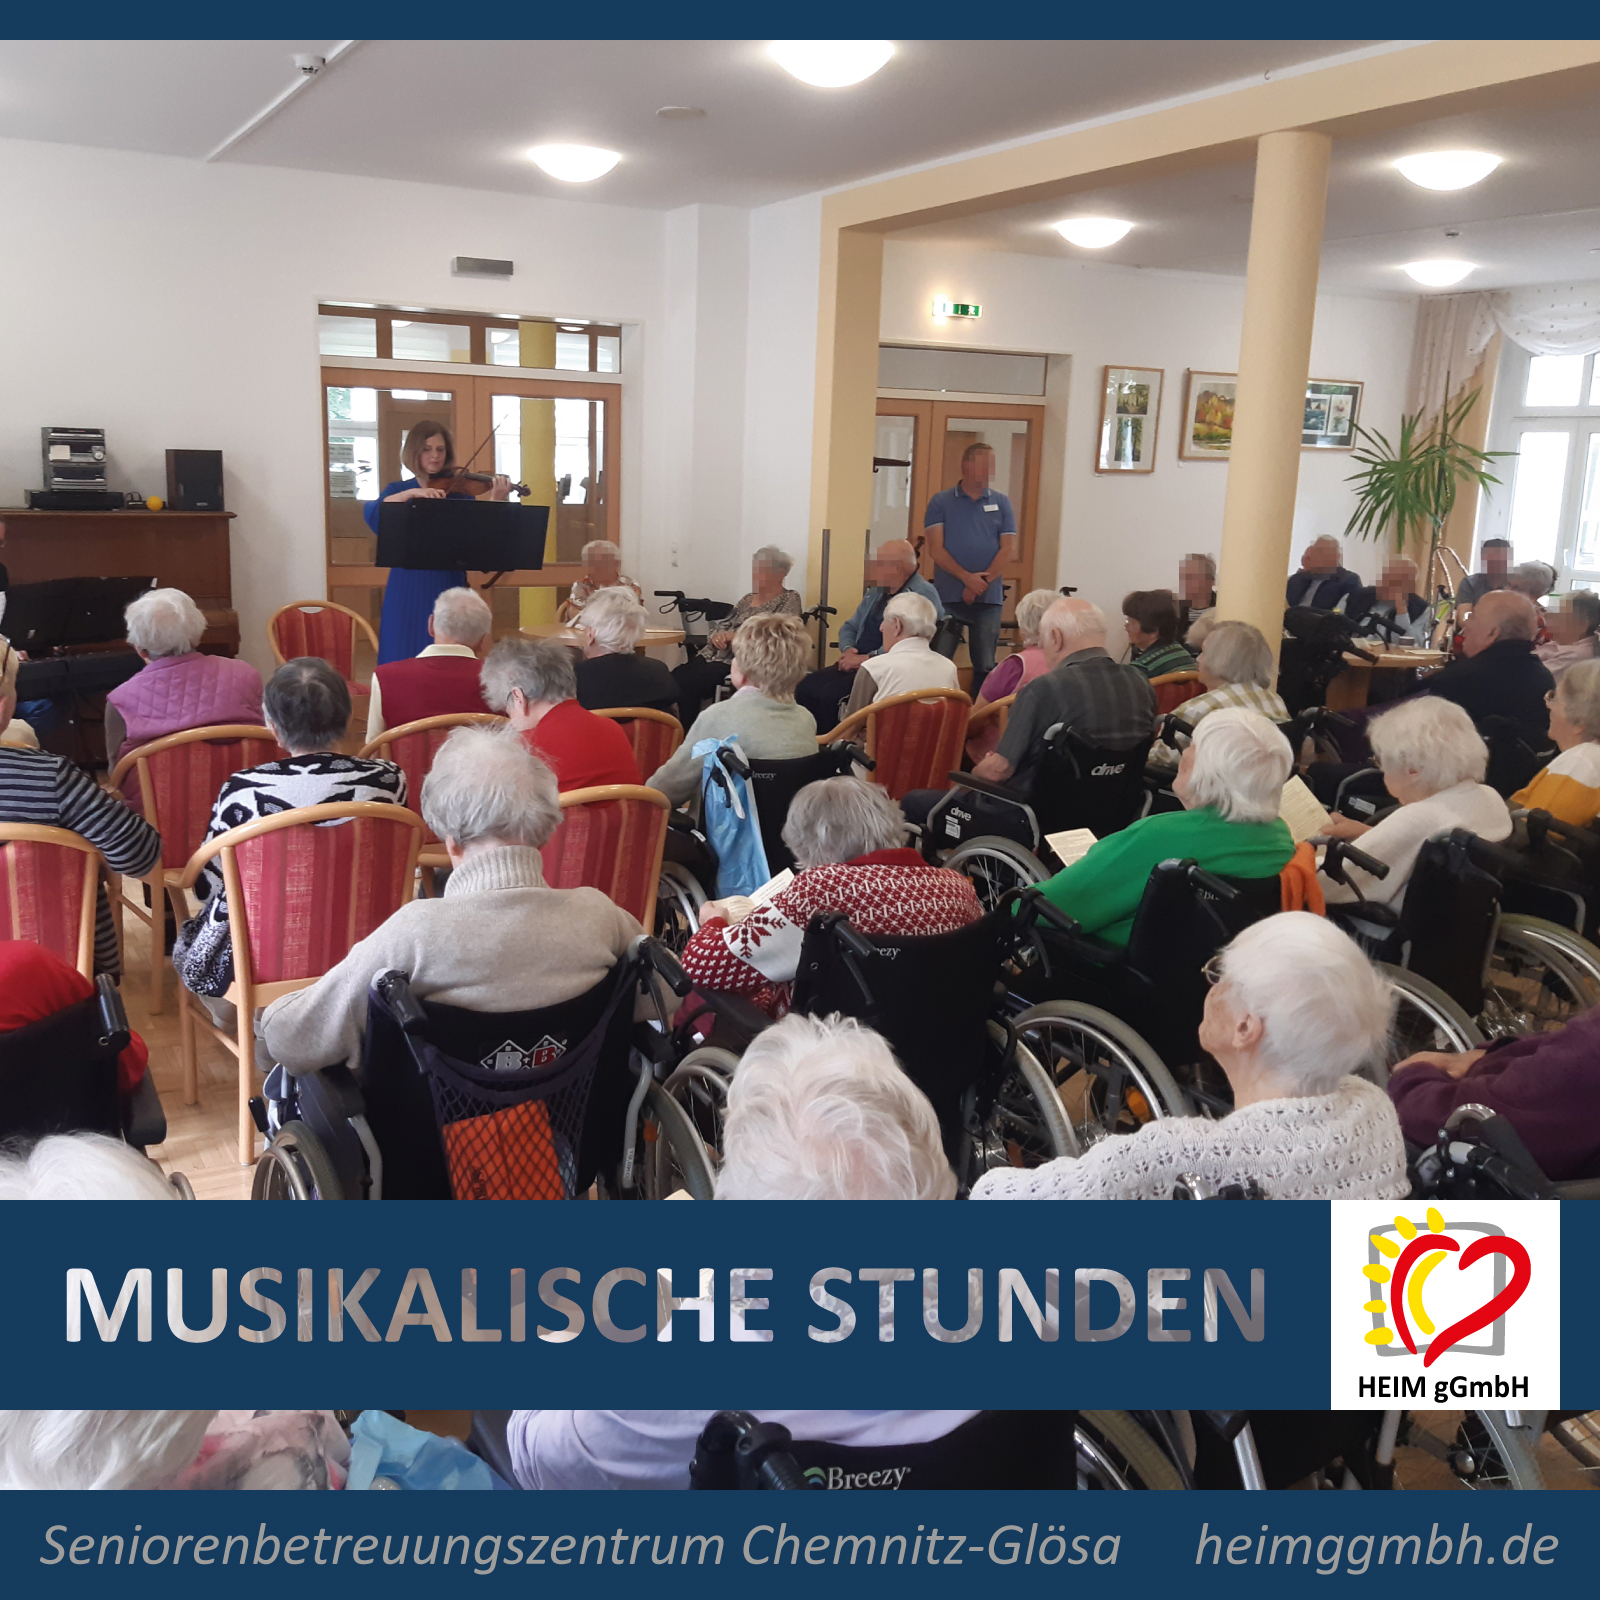 Letzten Freitag im Seniorenbetreuungszentrum Chemnitz-Glösa der HEIM gemeinnützigen GmbH: klassische Musik am Nachmittag.